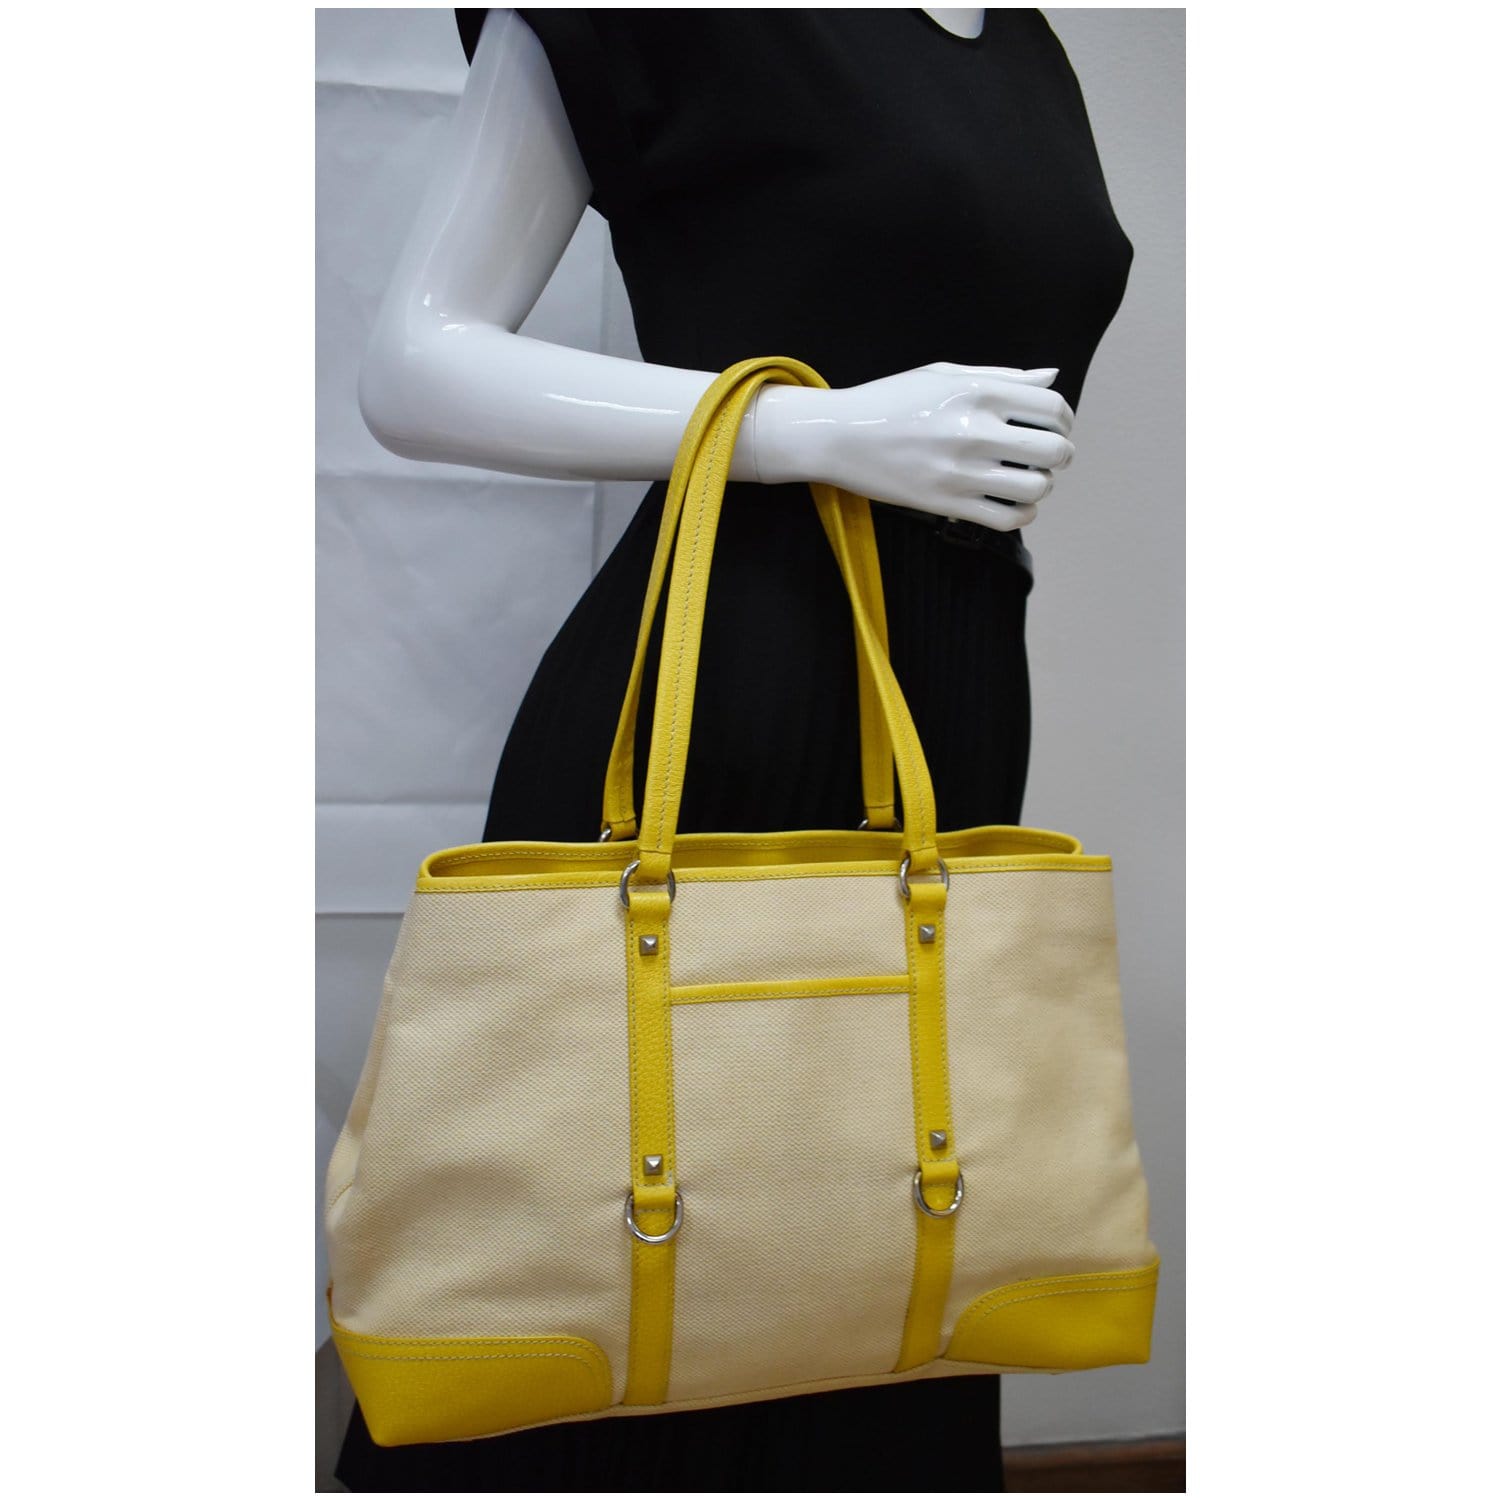 Alma Chain Bag Medium - Lime